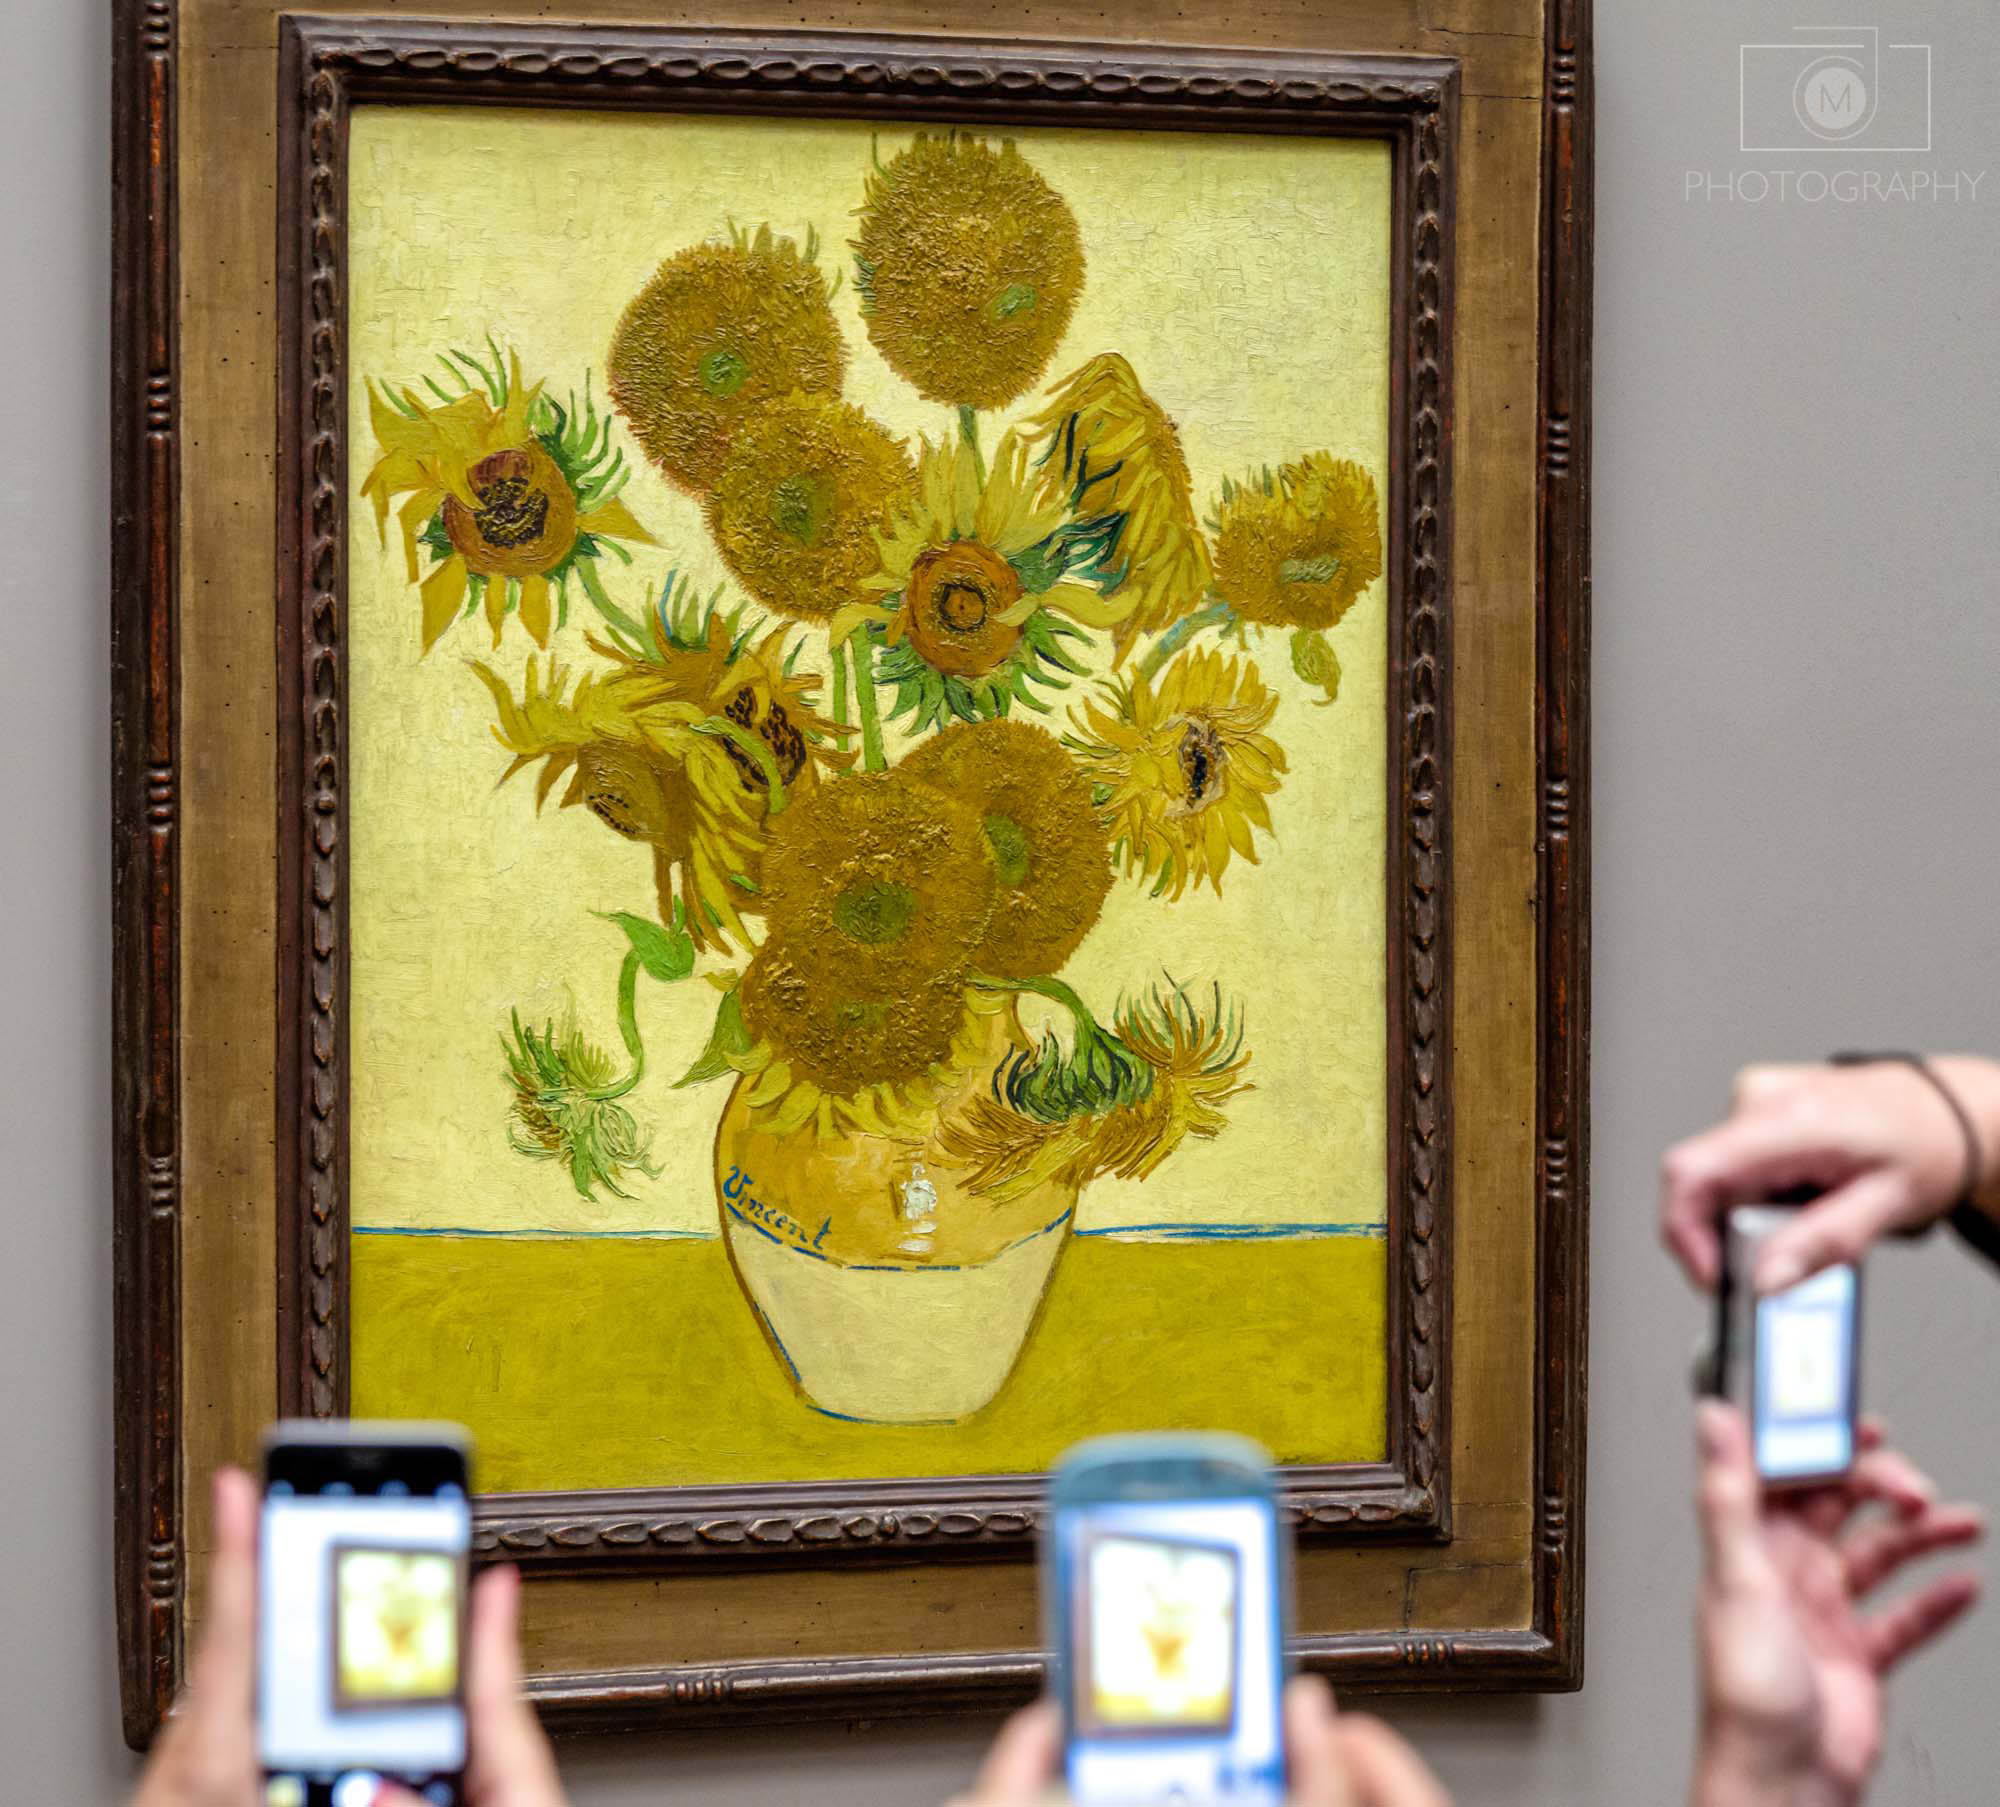 Obraz Slnečnice od Vincent van Gogh v The national gallery, Londýn